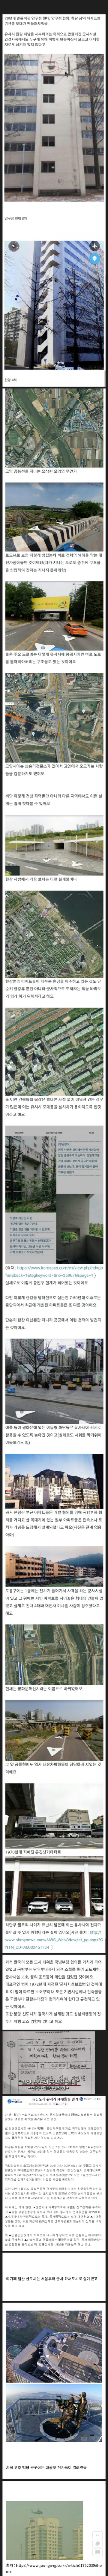 한국에 숨겨진 전쟁대비 비밀시설들..jpg